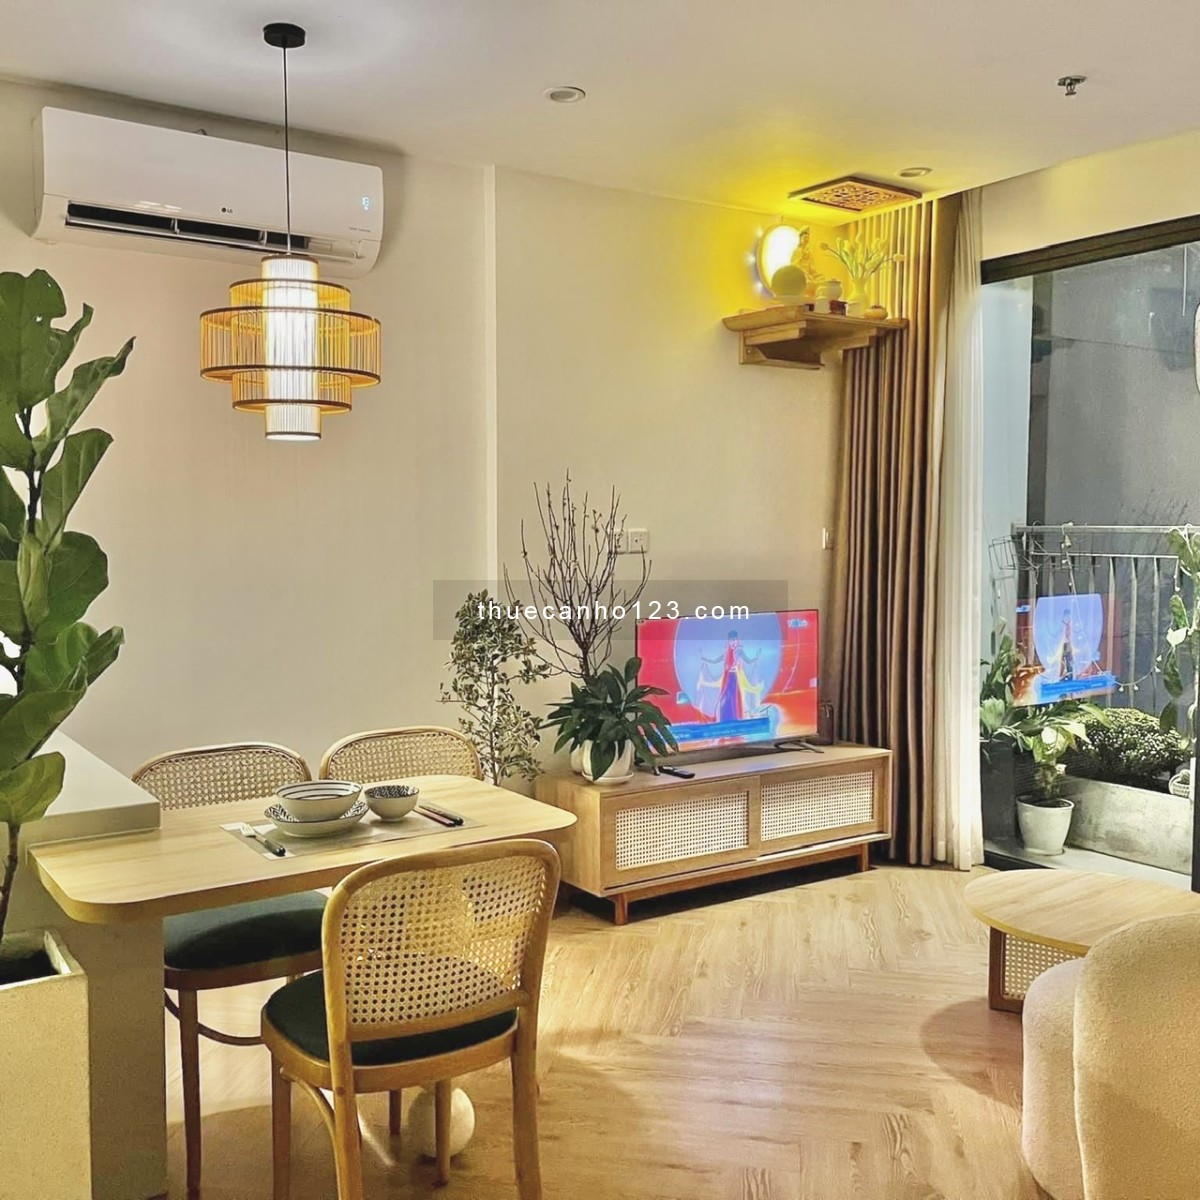 Chuyên cho thuê căn hộ hạng sang, Luxury Vinhomes Grand Park - Căn 1PN+ full nội thất 8 tr/tháng